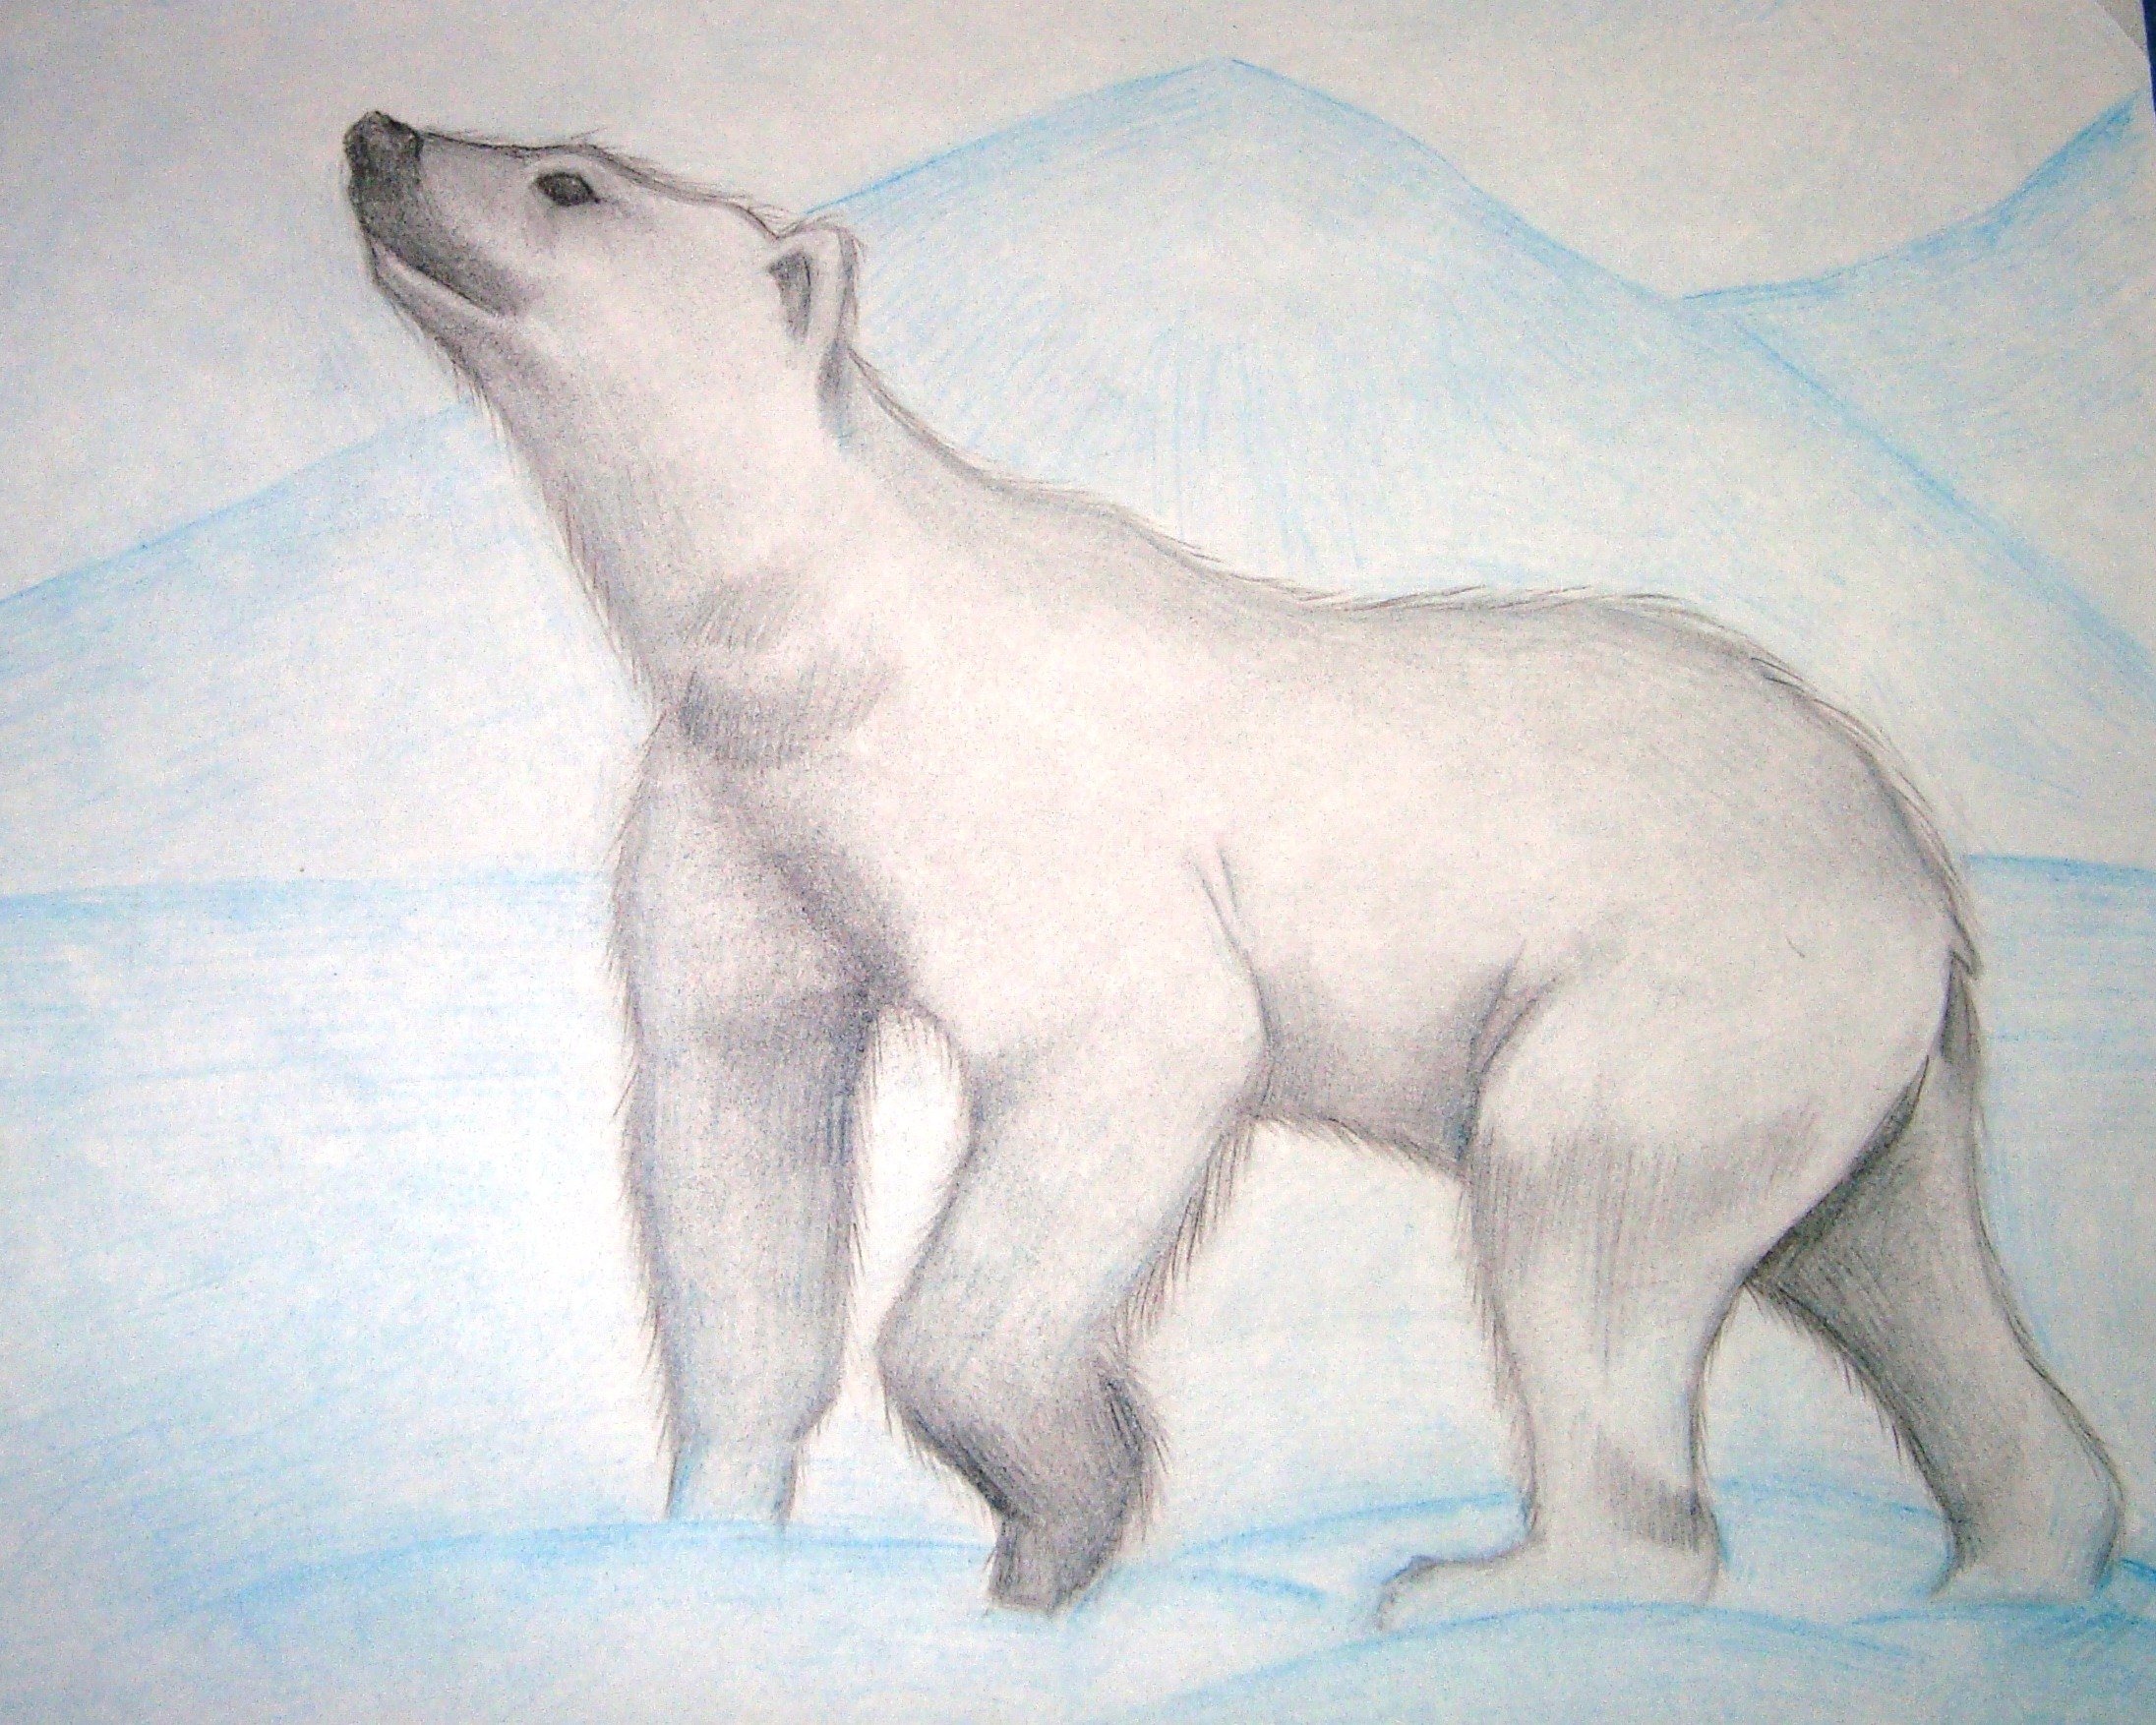 Детские рисунки белого медведя